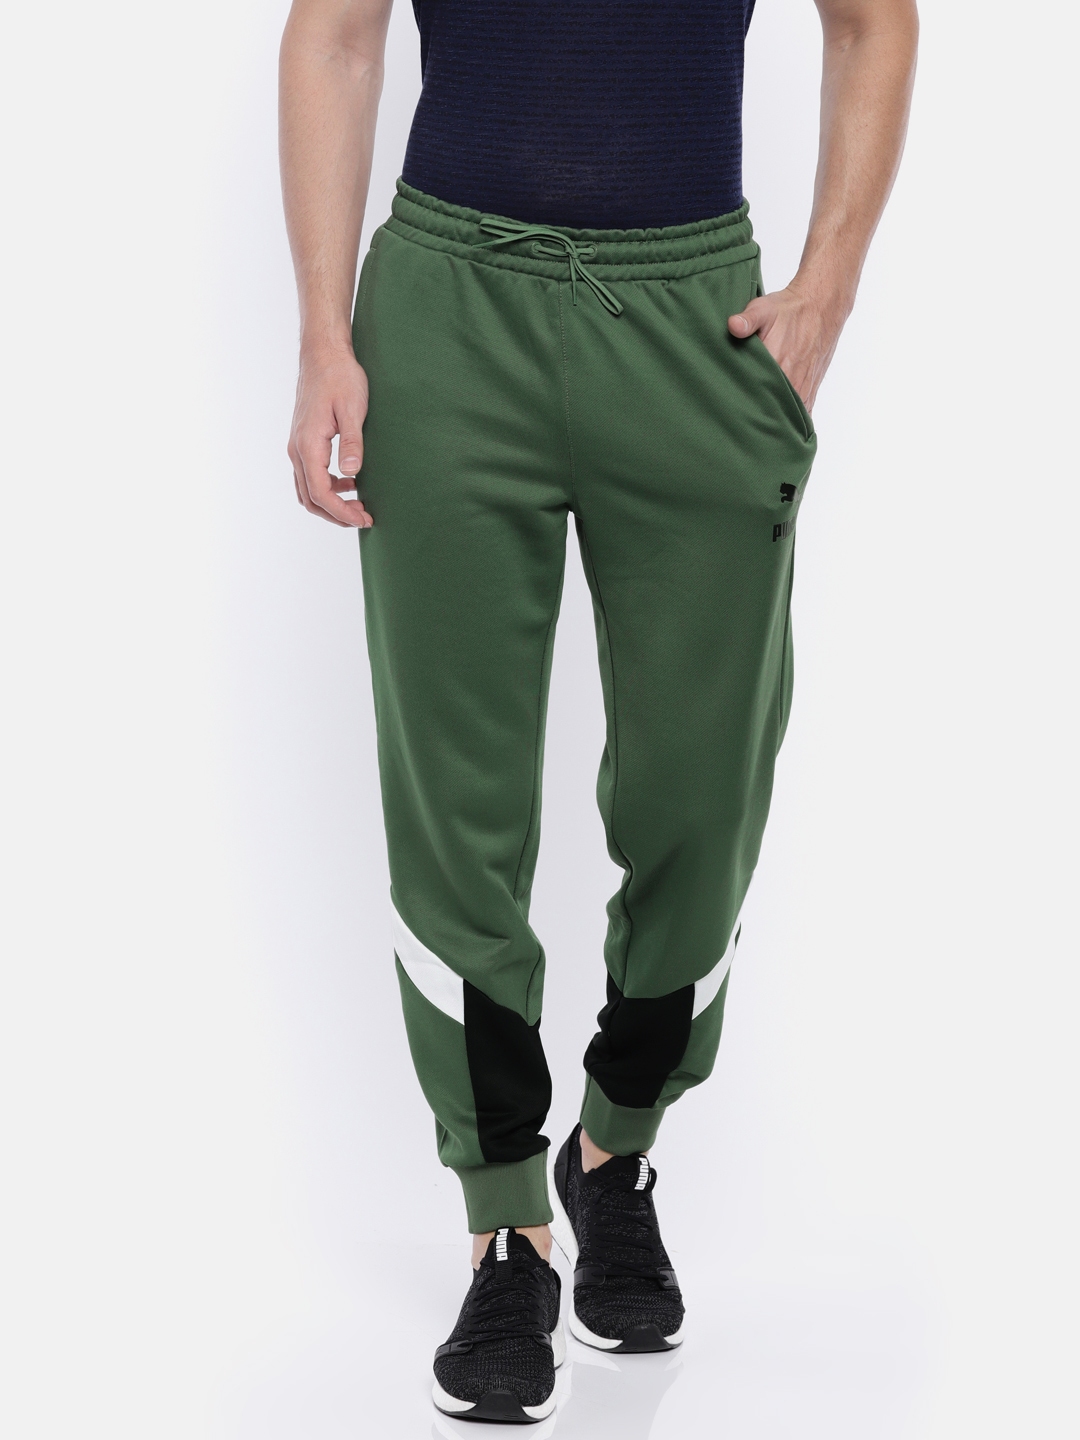 khaki green puma jumper